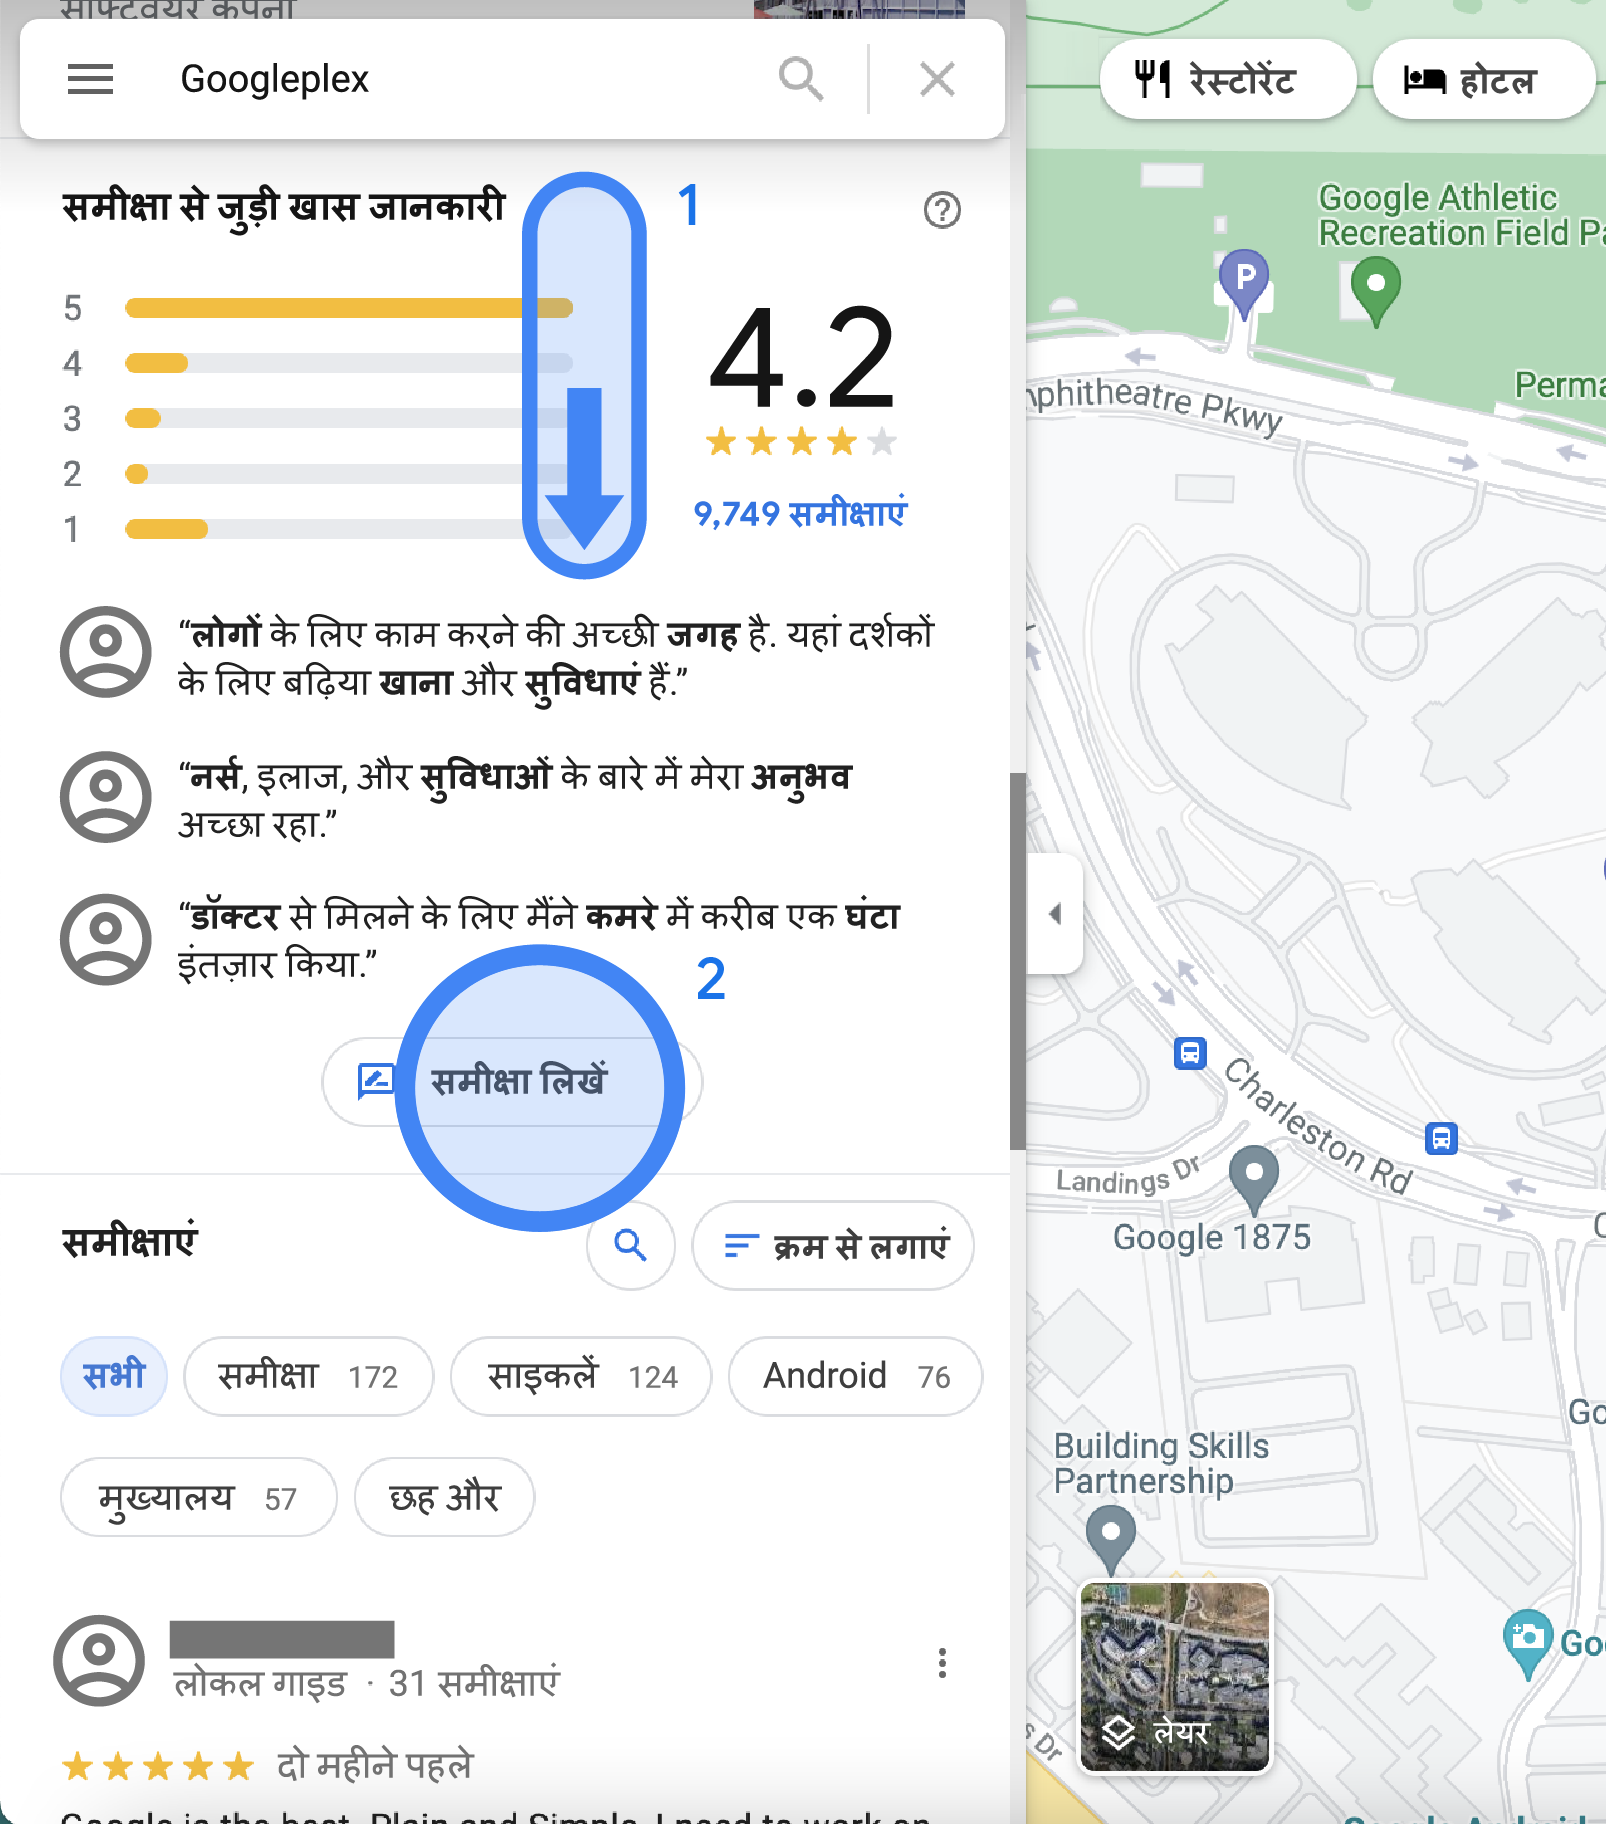 Google Maps पर बाईं ओर दिए गए साइडबार में, Googleplex की समीक्षा की खास जानकारी दी गई है. इसमें समीक्षा की औसत रेटिंग और हाइलाइट के साथ-साथ "समीक्षा लिखें" बटन दिख रहा है. साथ ही, सभी समीक्षाओं की सूची भी दी गई है.